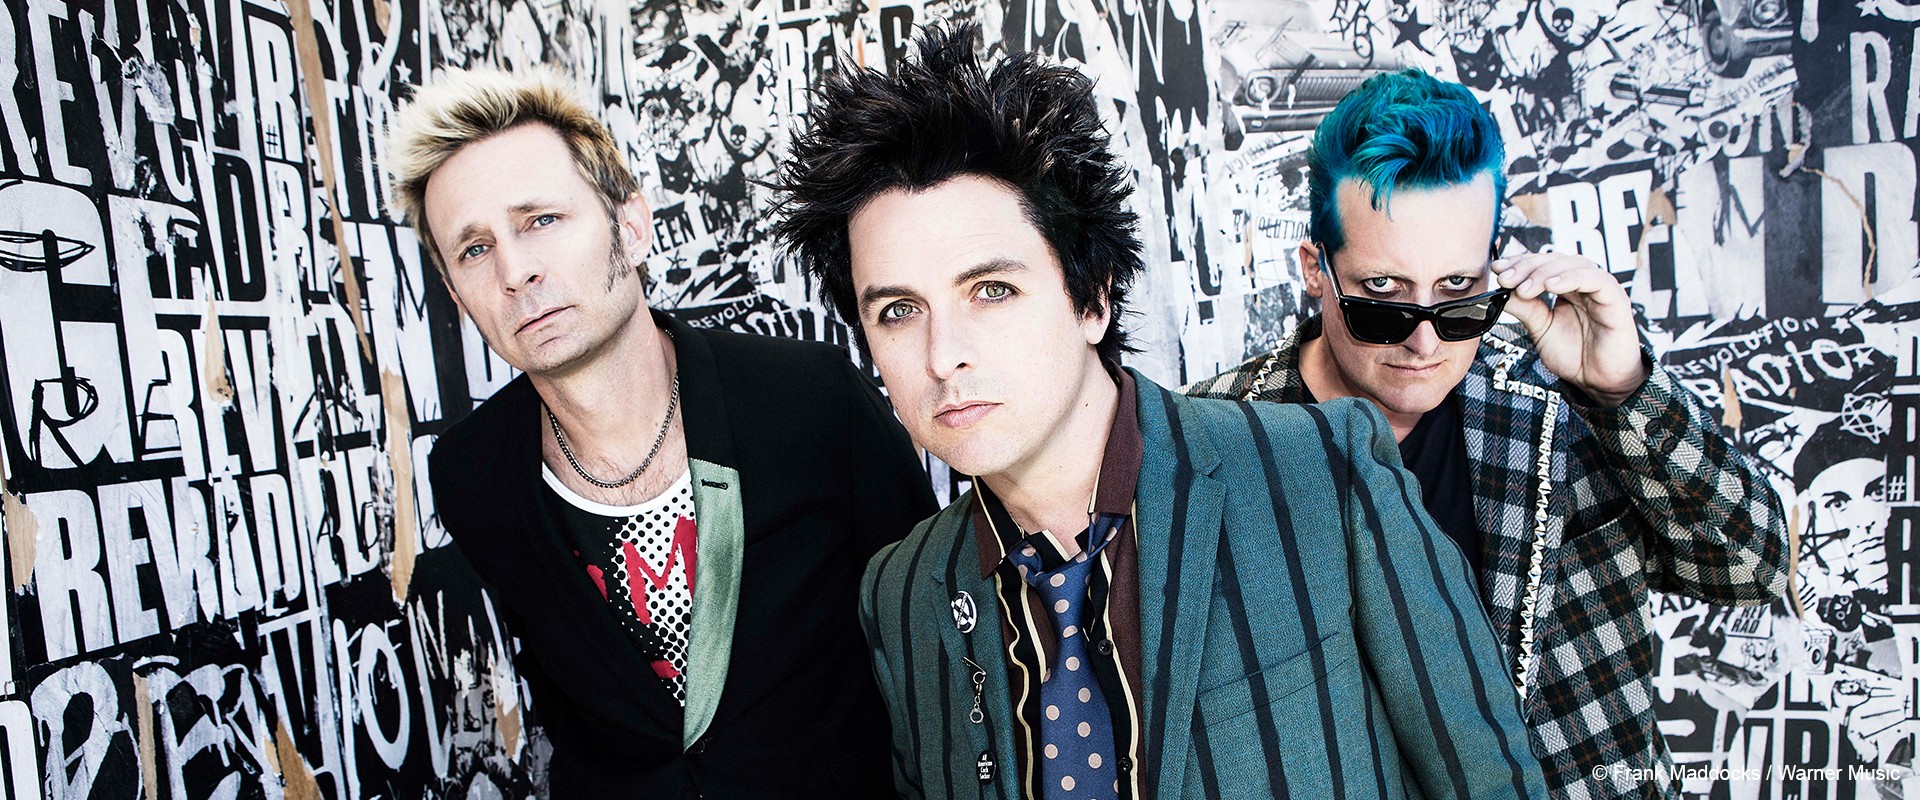 Posts auf Instagram von Green Day geben Rätsel auf